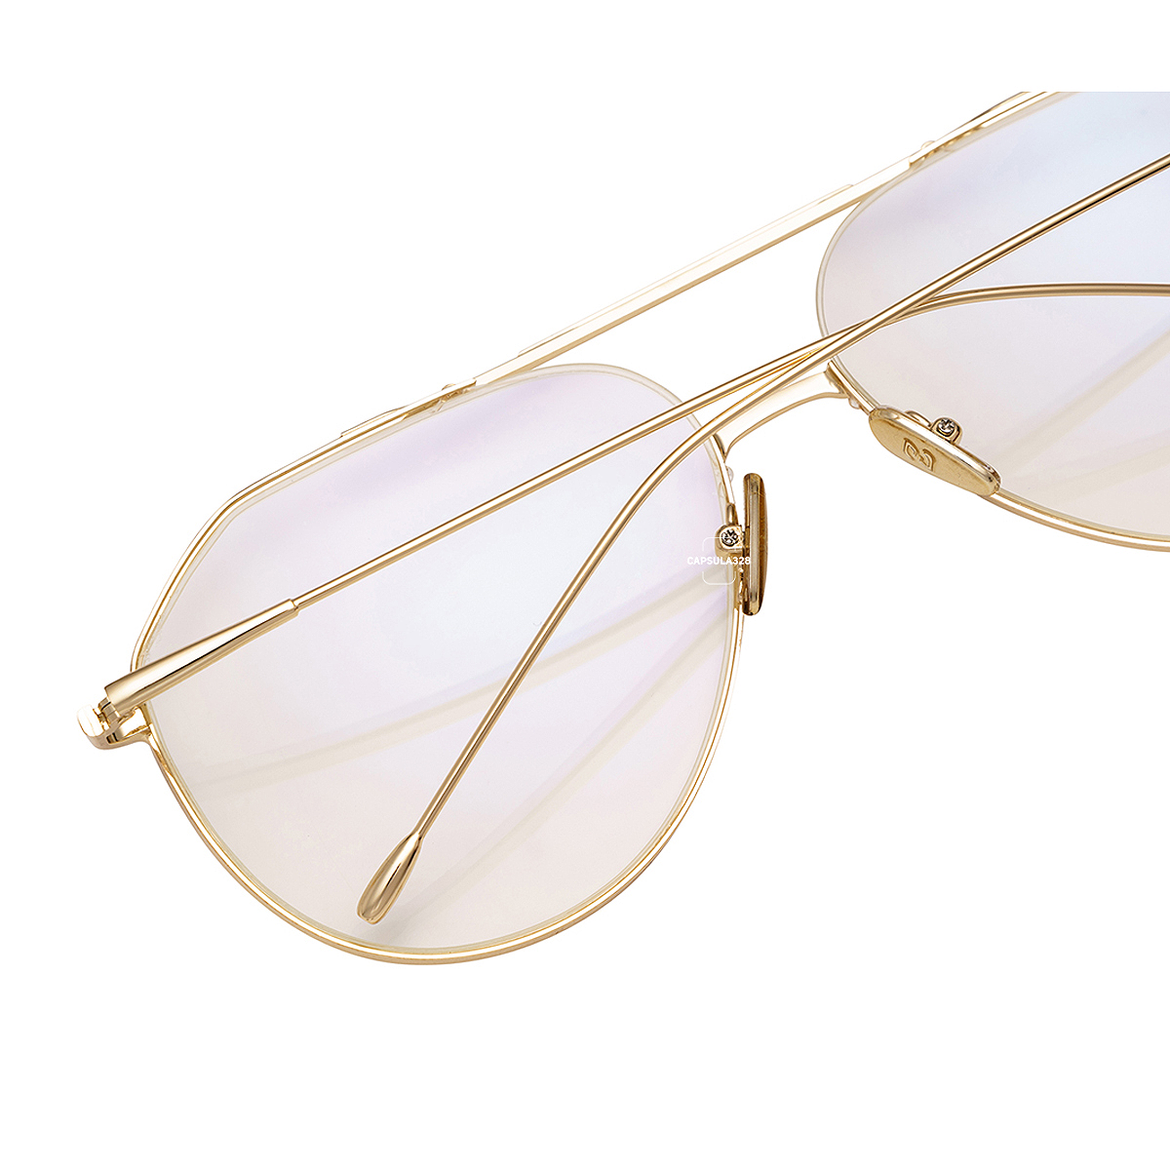 Солнцезащитные очки Aviator 7206